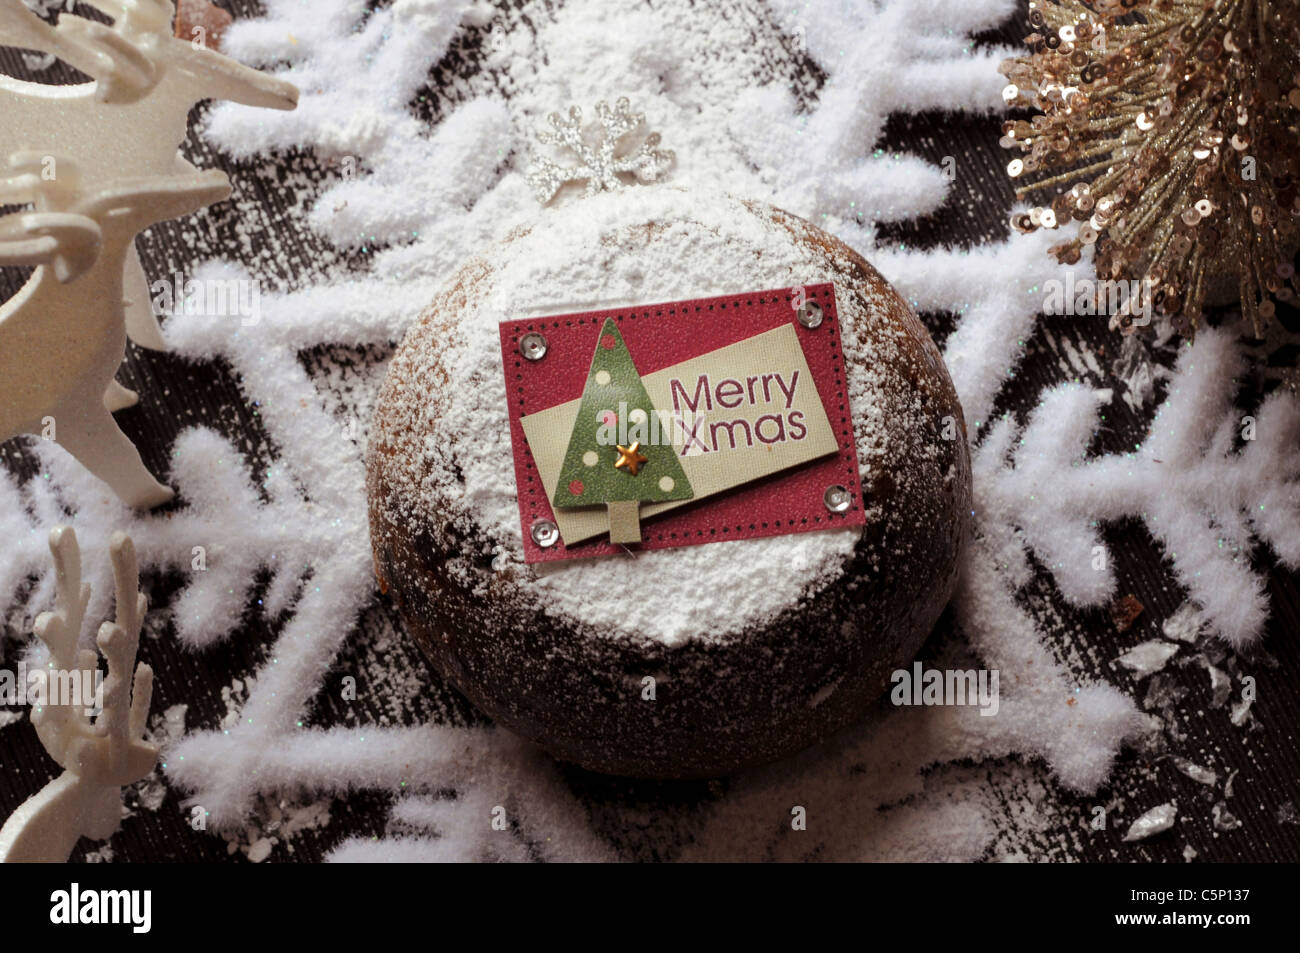 Christmas pudding Stock Photo